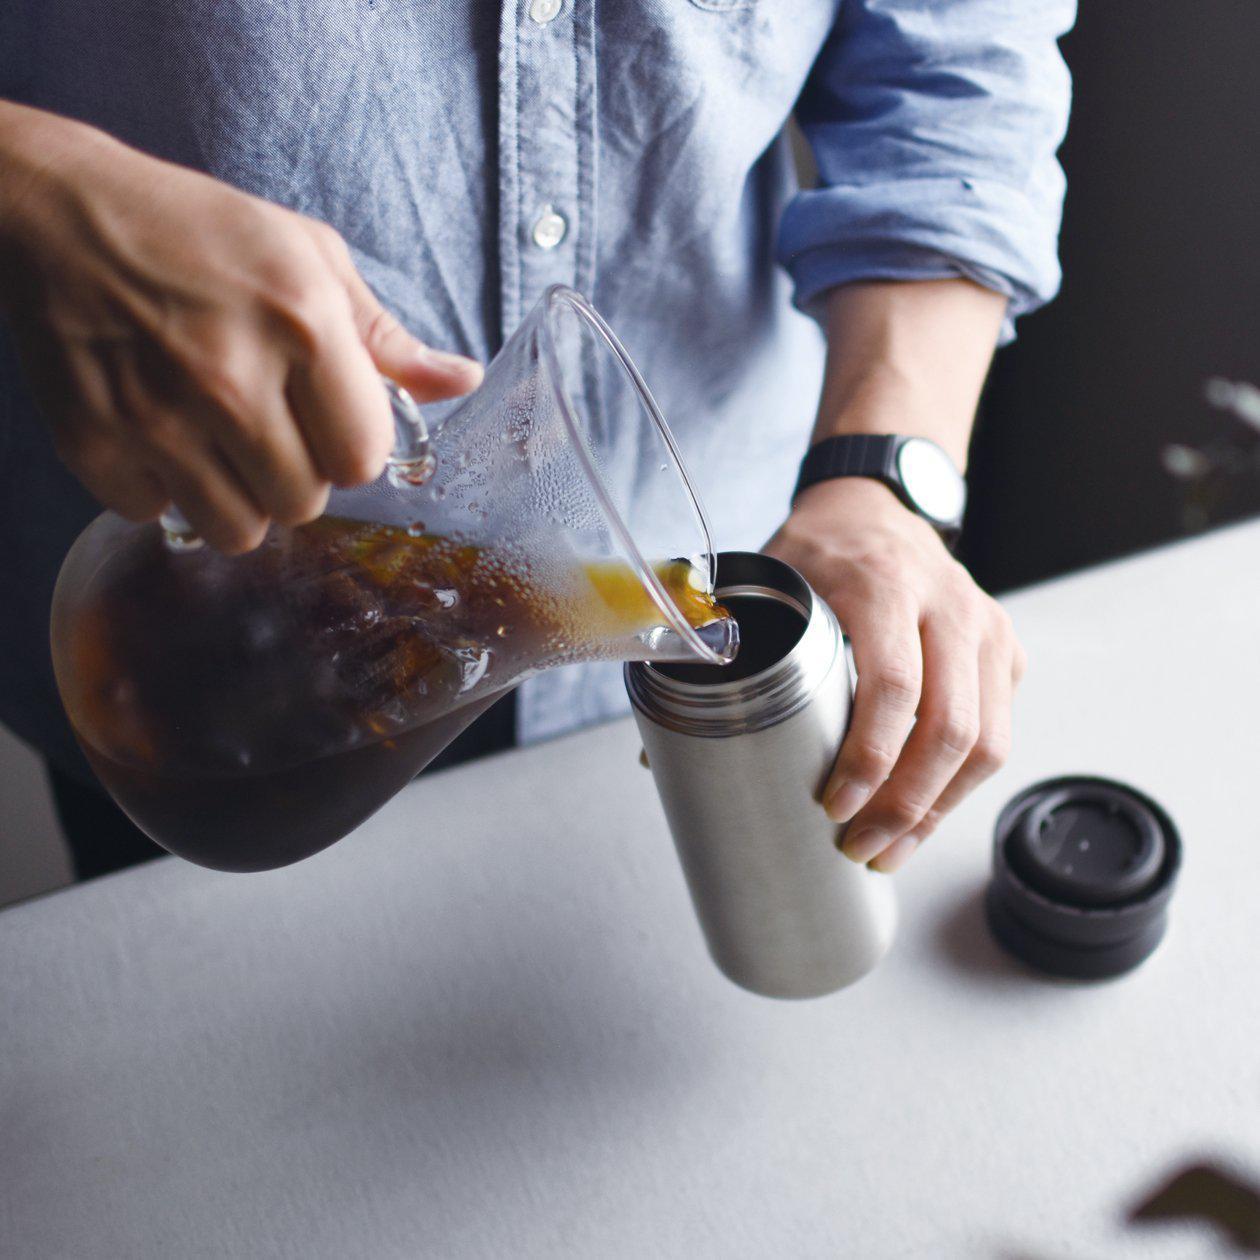 TRAVEL TUMBLER de Kinto a été conçue pour ceux qui mènent un mode de vie sain et actif - pour les personnes qui apprécient les saveurs subtiles du café et du thé, ou encore une eau minérale à la parfaite température